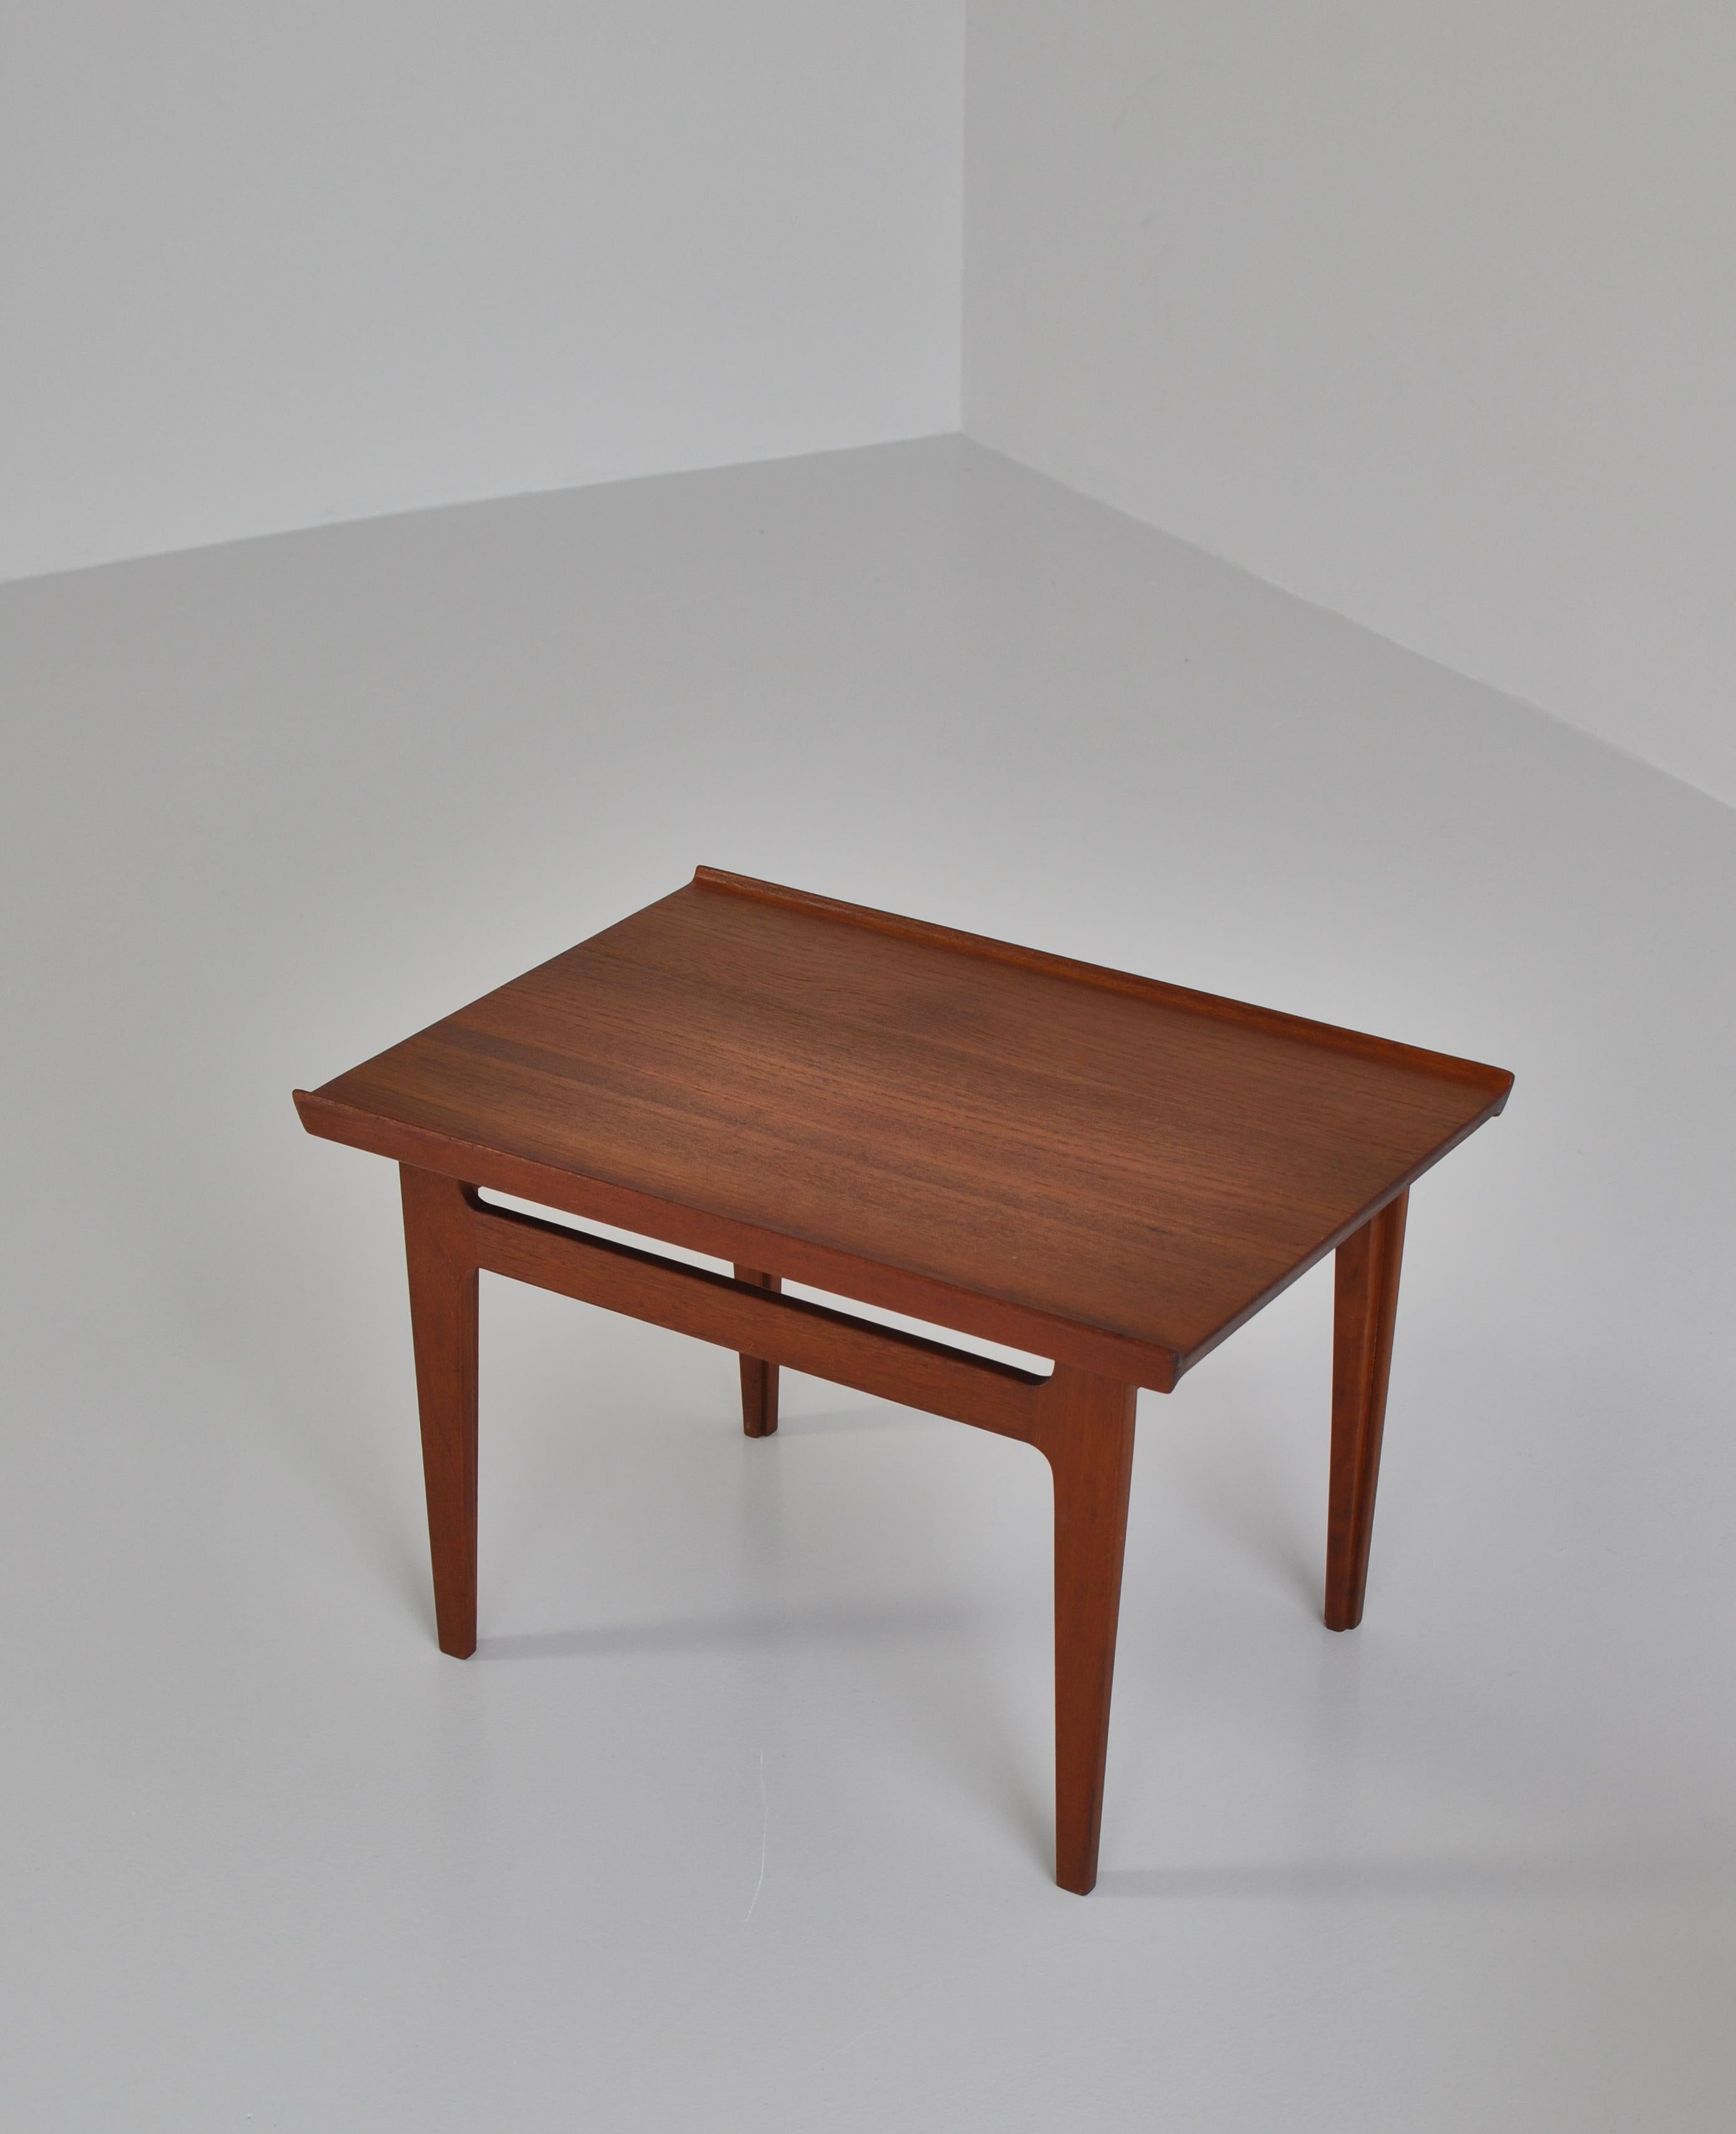 Scandinavian Modern Finn Juhl Pair of Side Tables in Solid Teakwood by France & Son, 1959